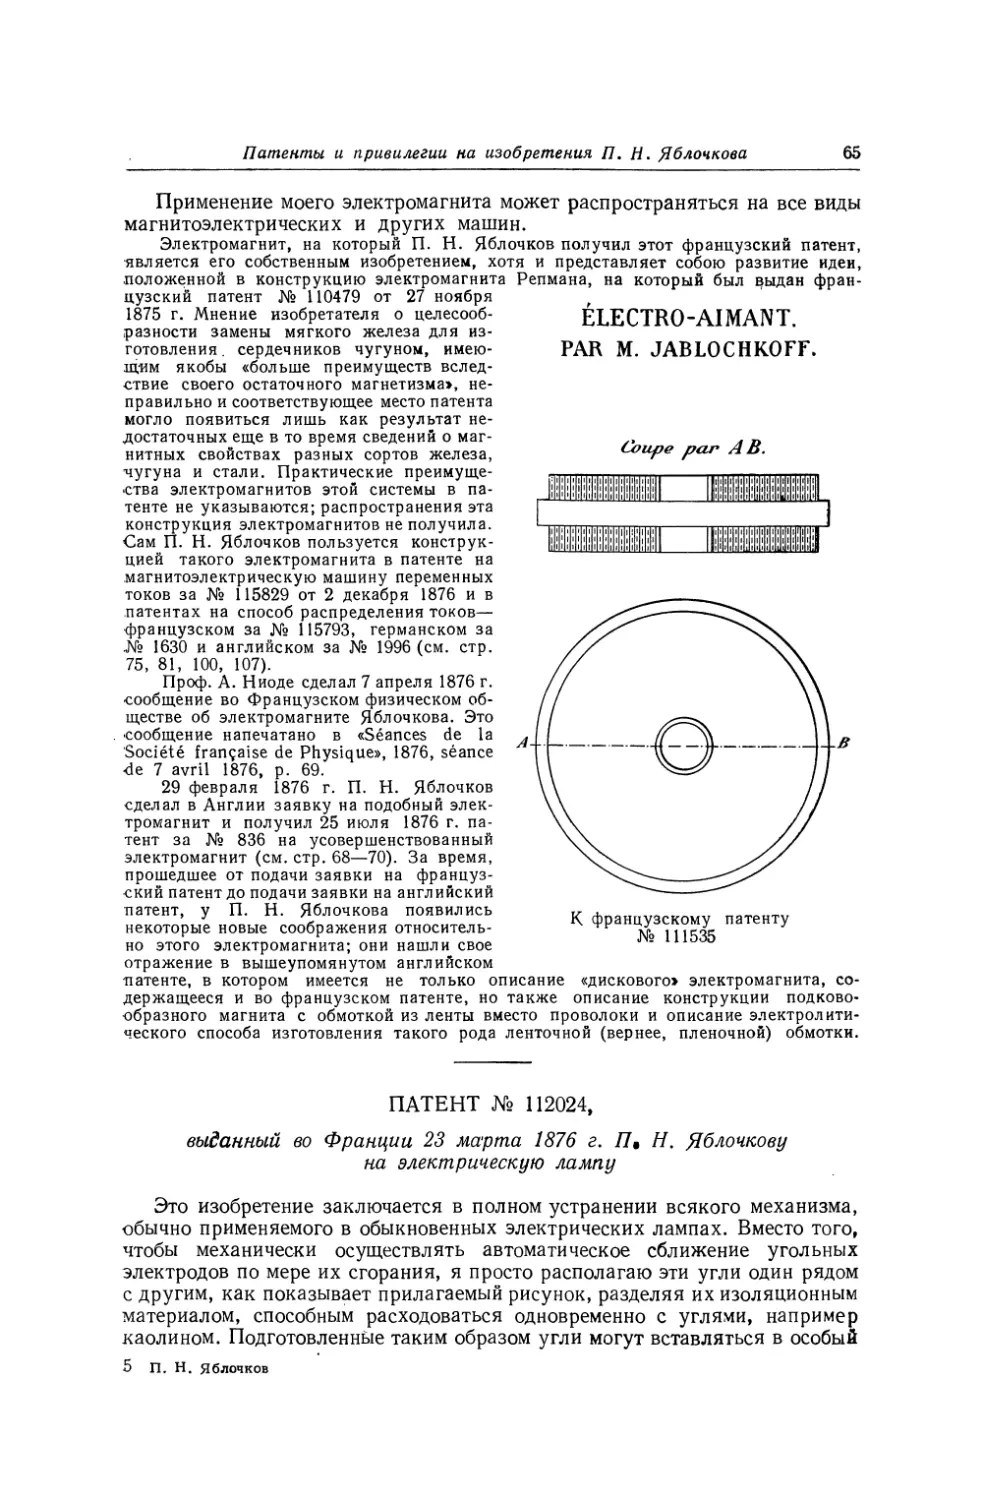 Патент № 112024, выданный ео Франции 23 марта 1876 г. П. Н. Яблочкову на электрическую лампу